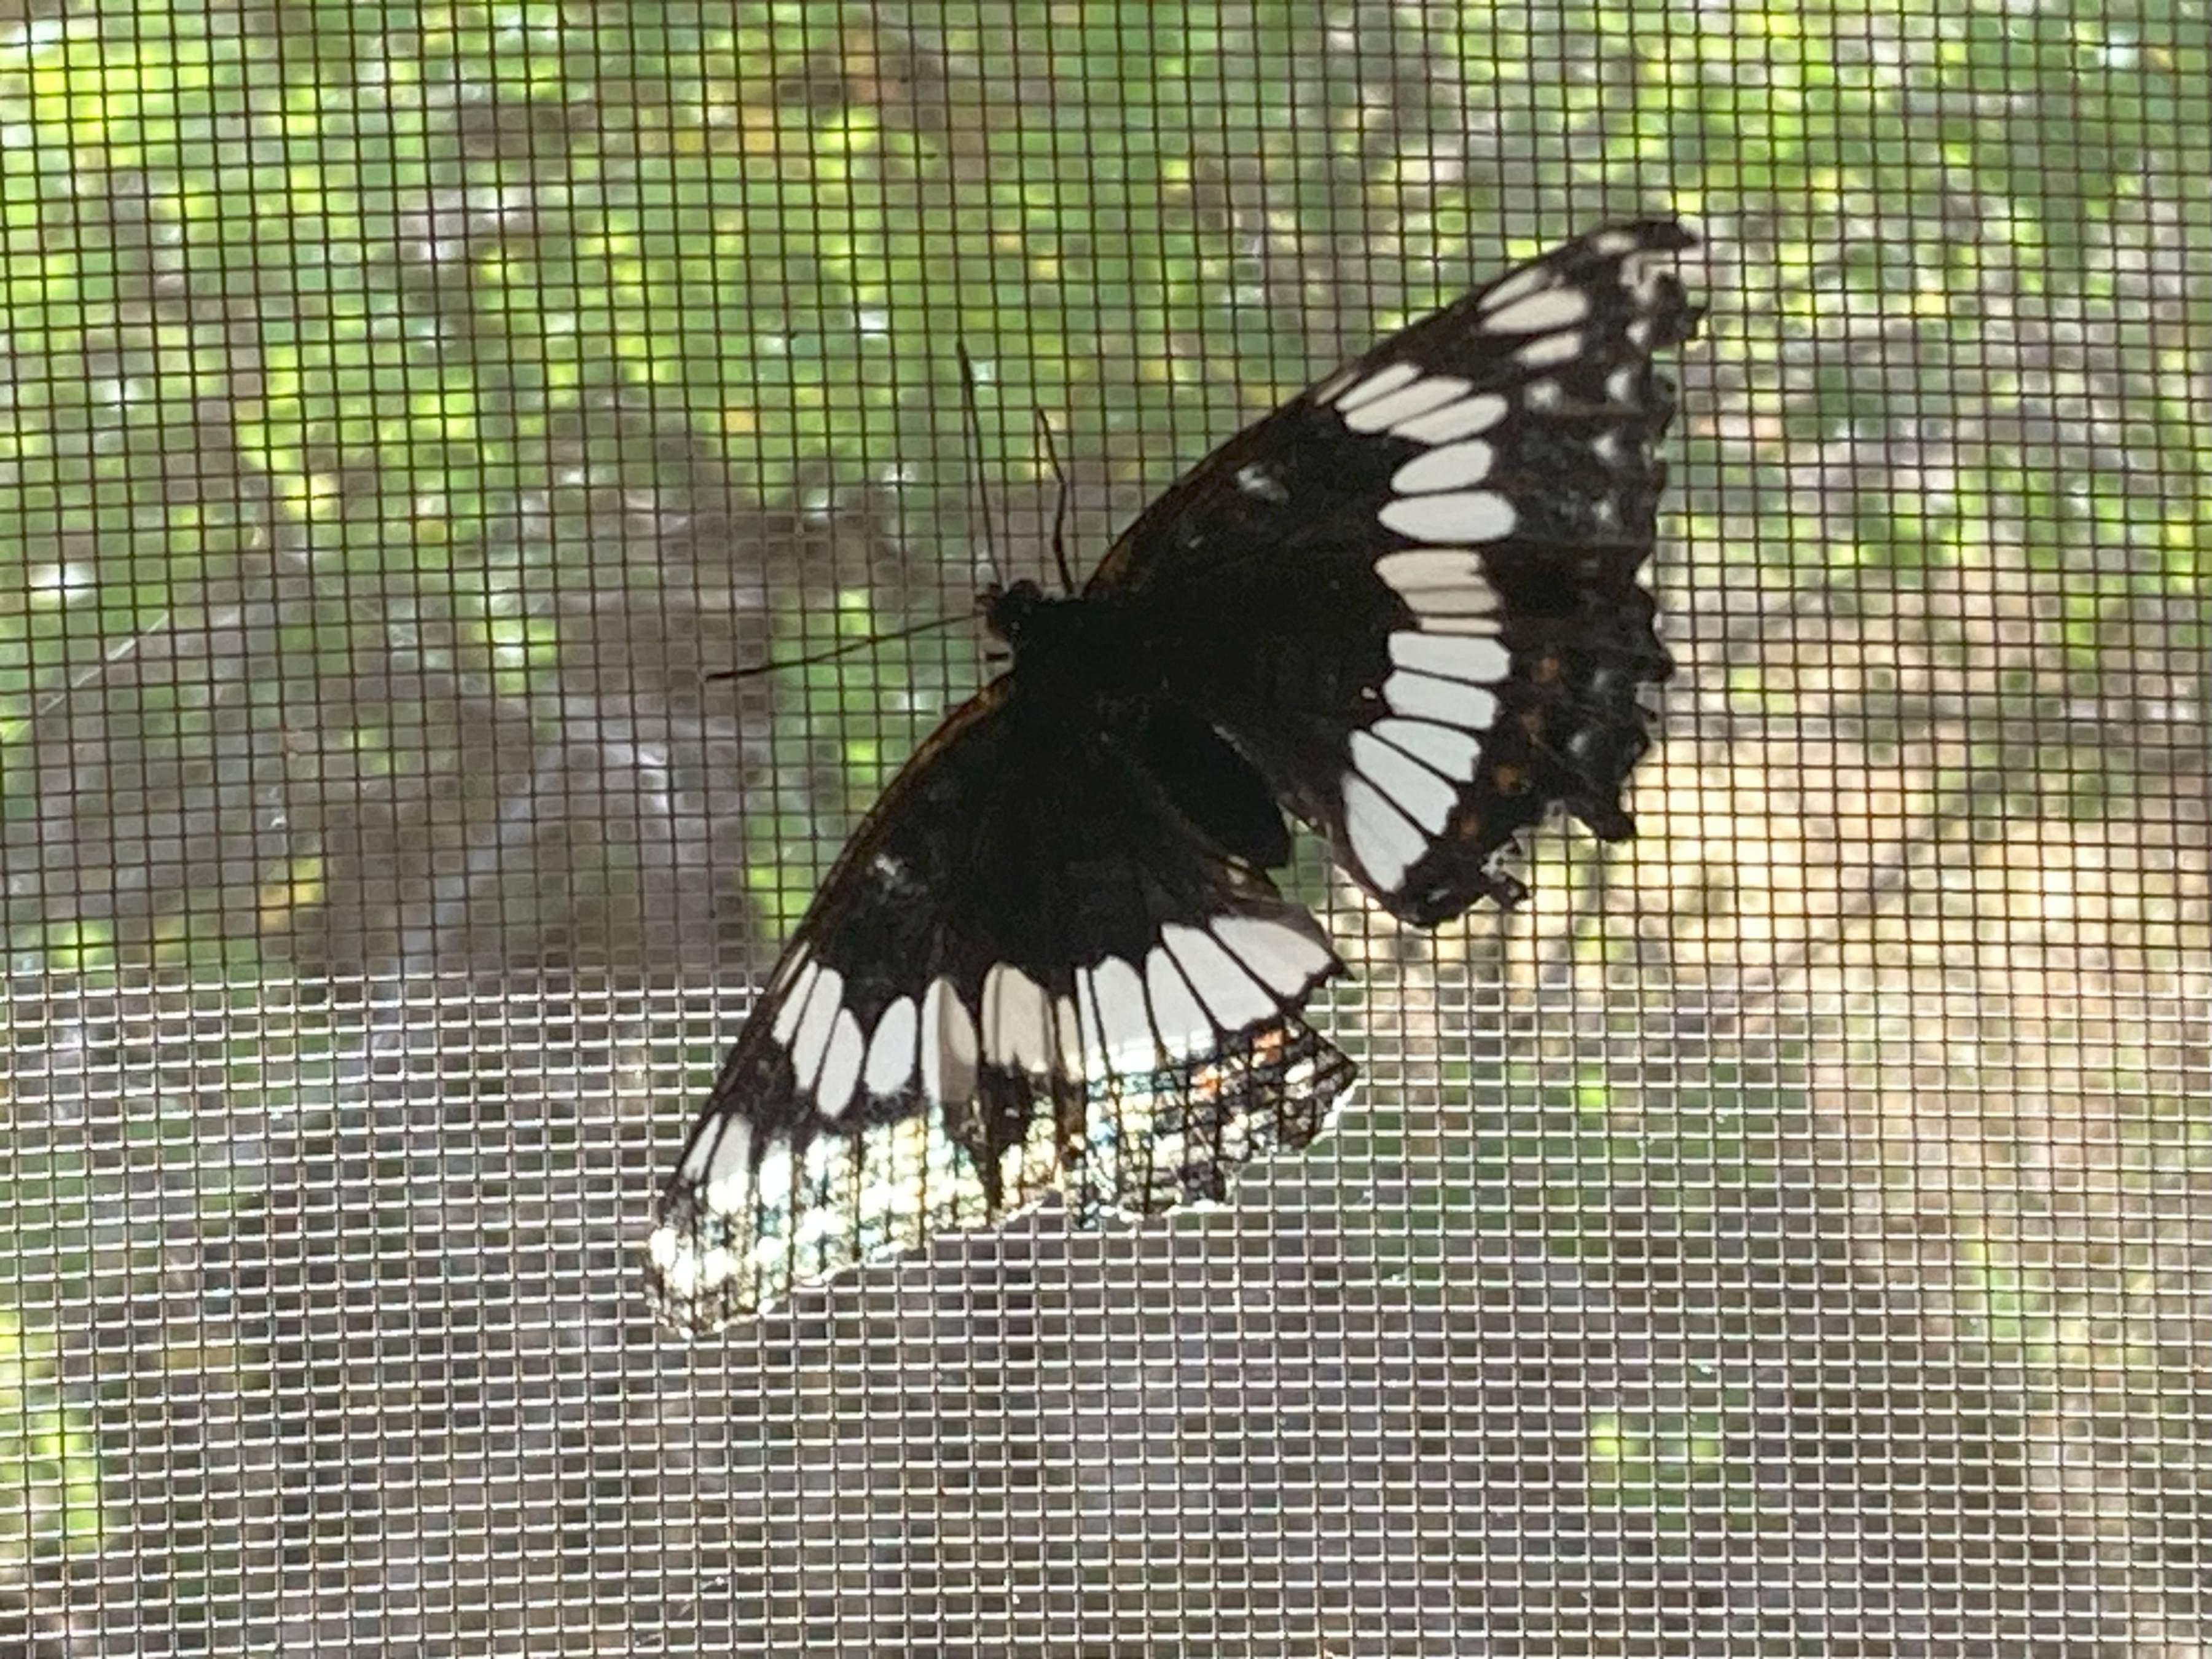 weidemeyer's admiral butterfly